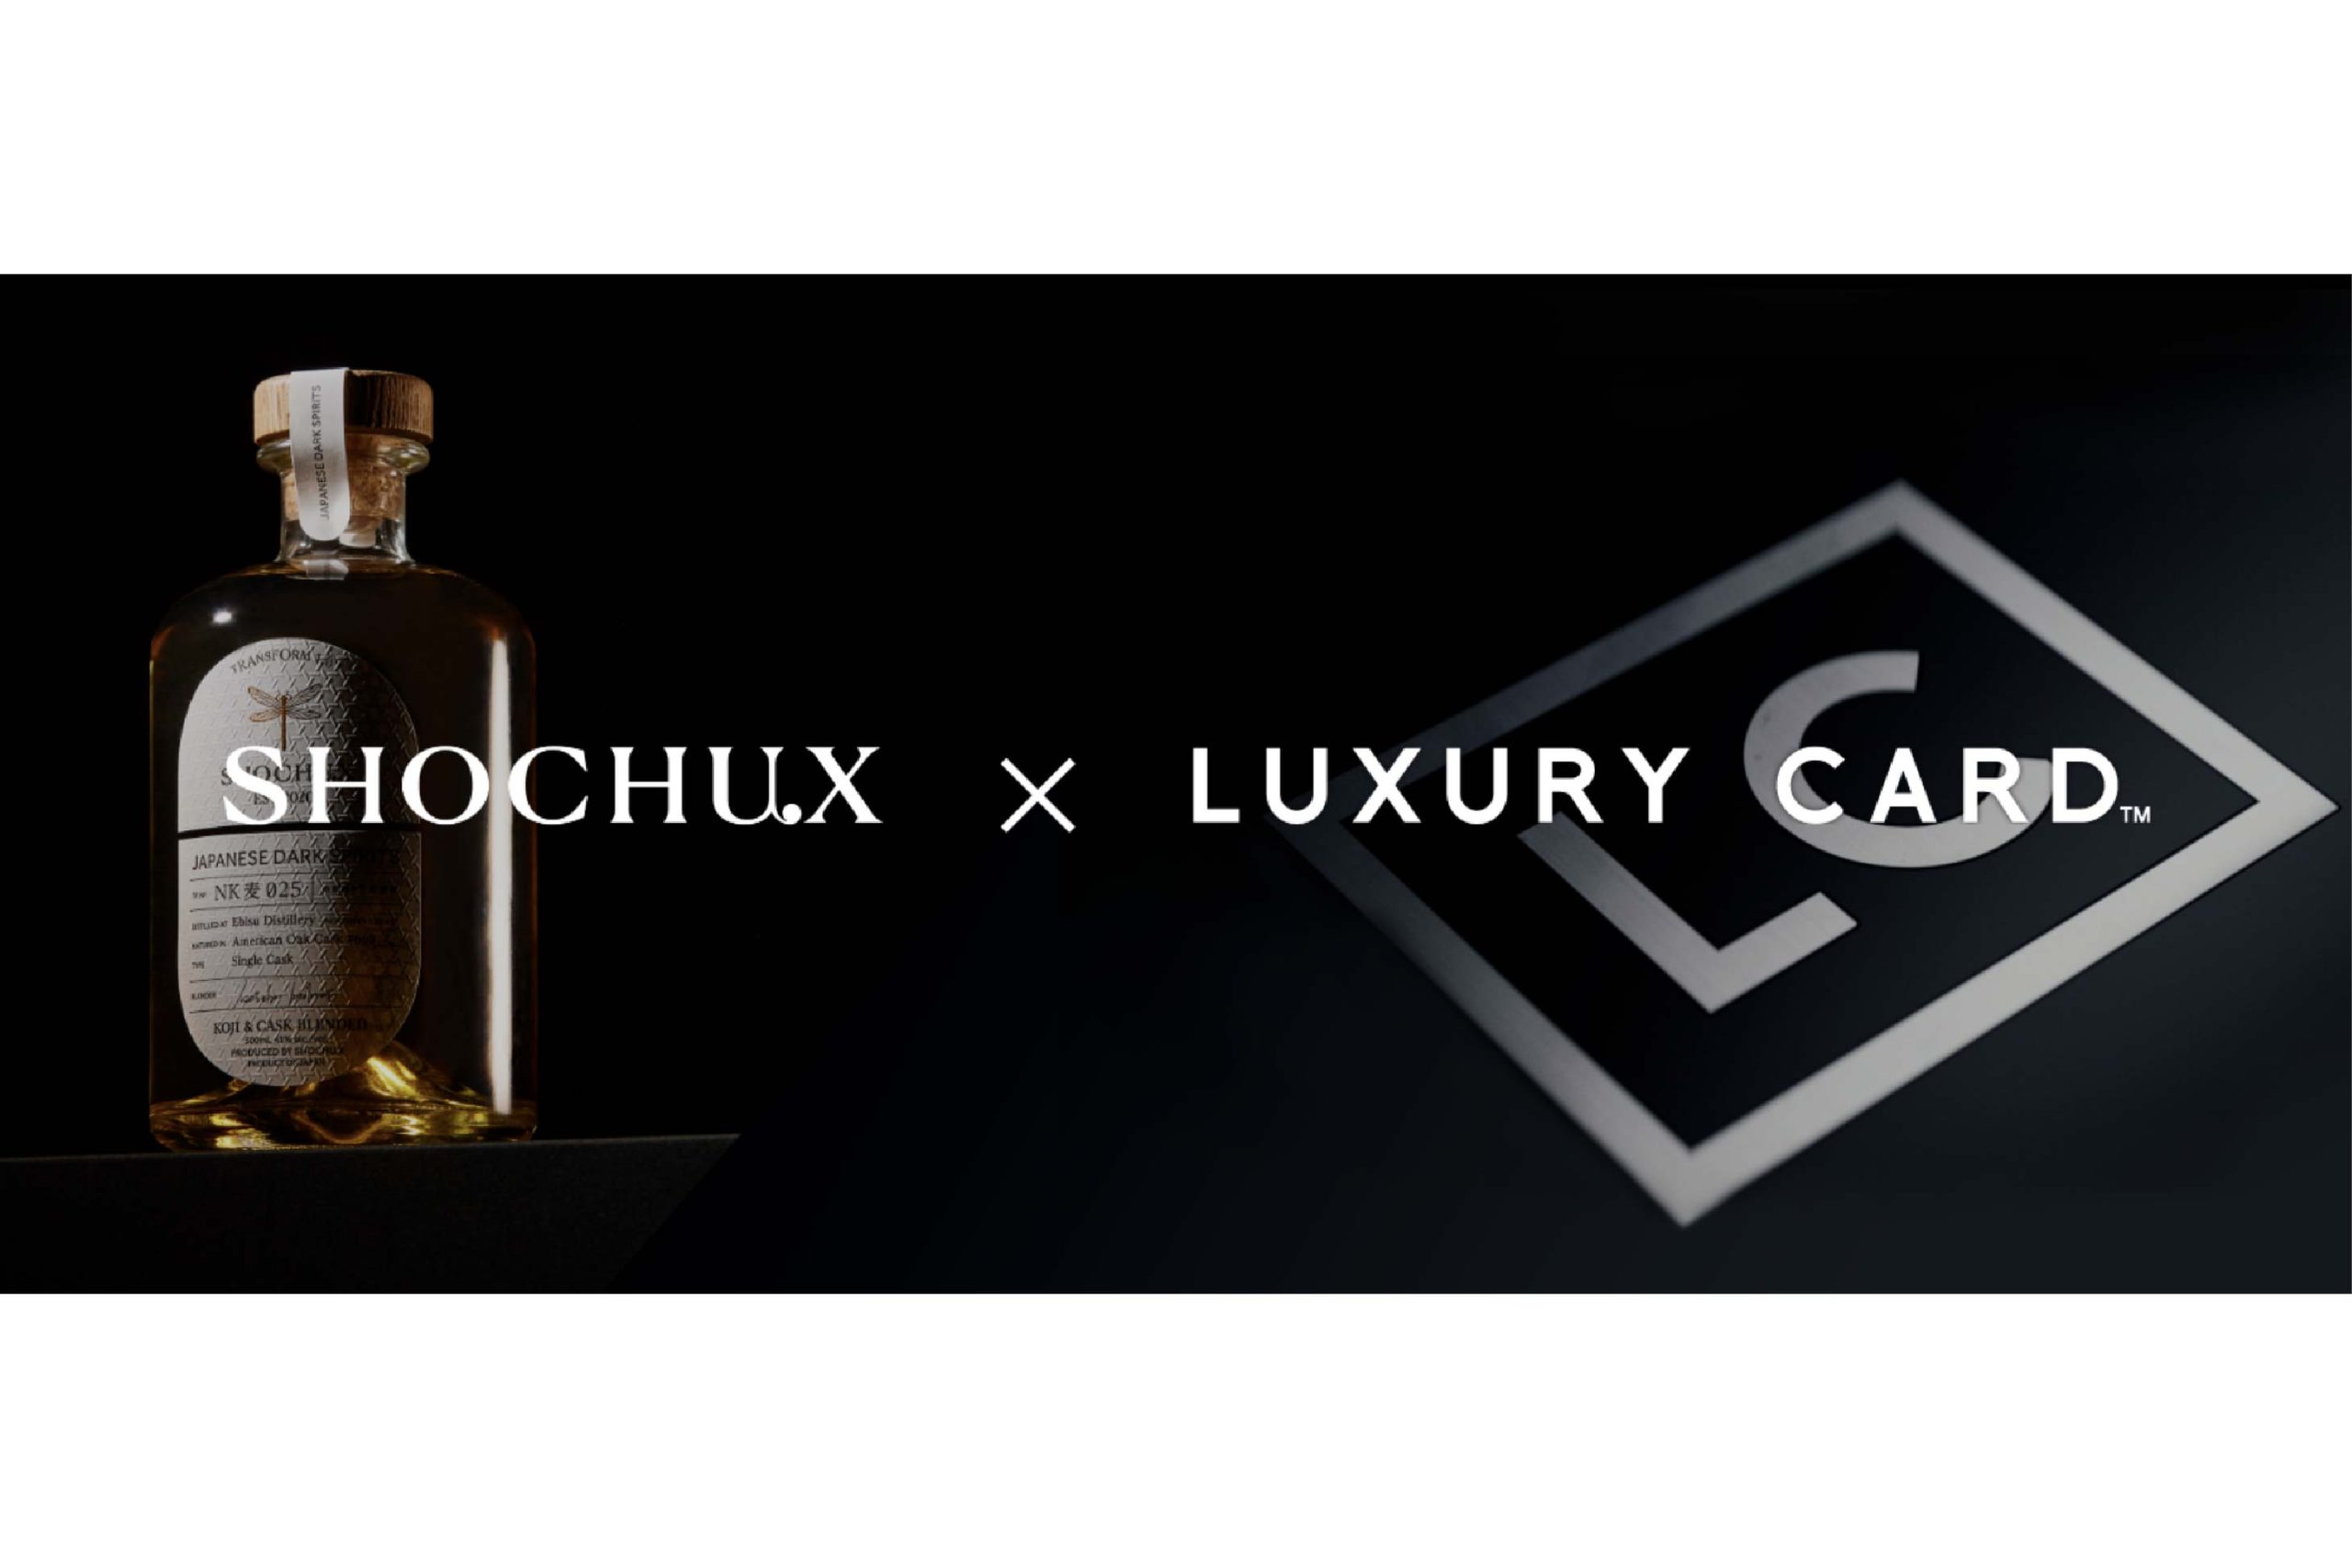 焼酎ブランド「SHOCHU X」が 米国発金属製クレジットカード「LUXURY CARD」とコラボレーション。SHOCHU Xだからこそ実現できる”焼酎による新しいラグジュアリーな体験”をご提供。